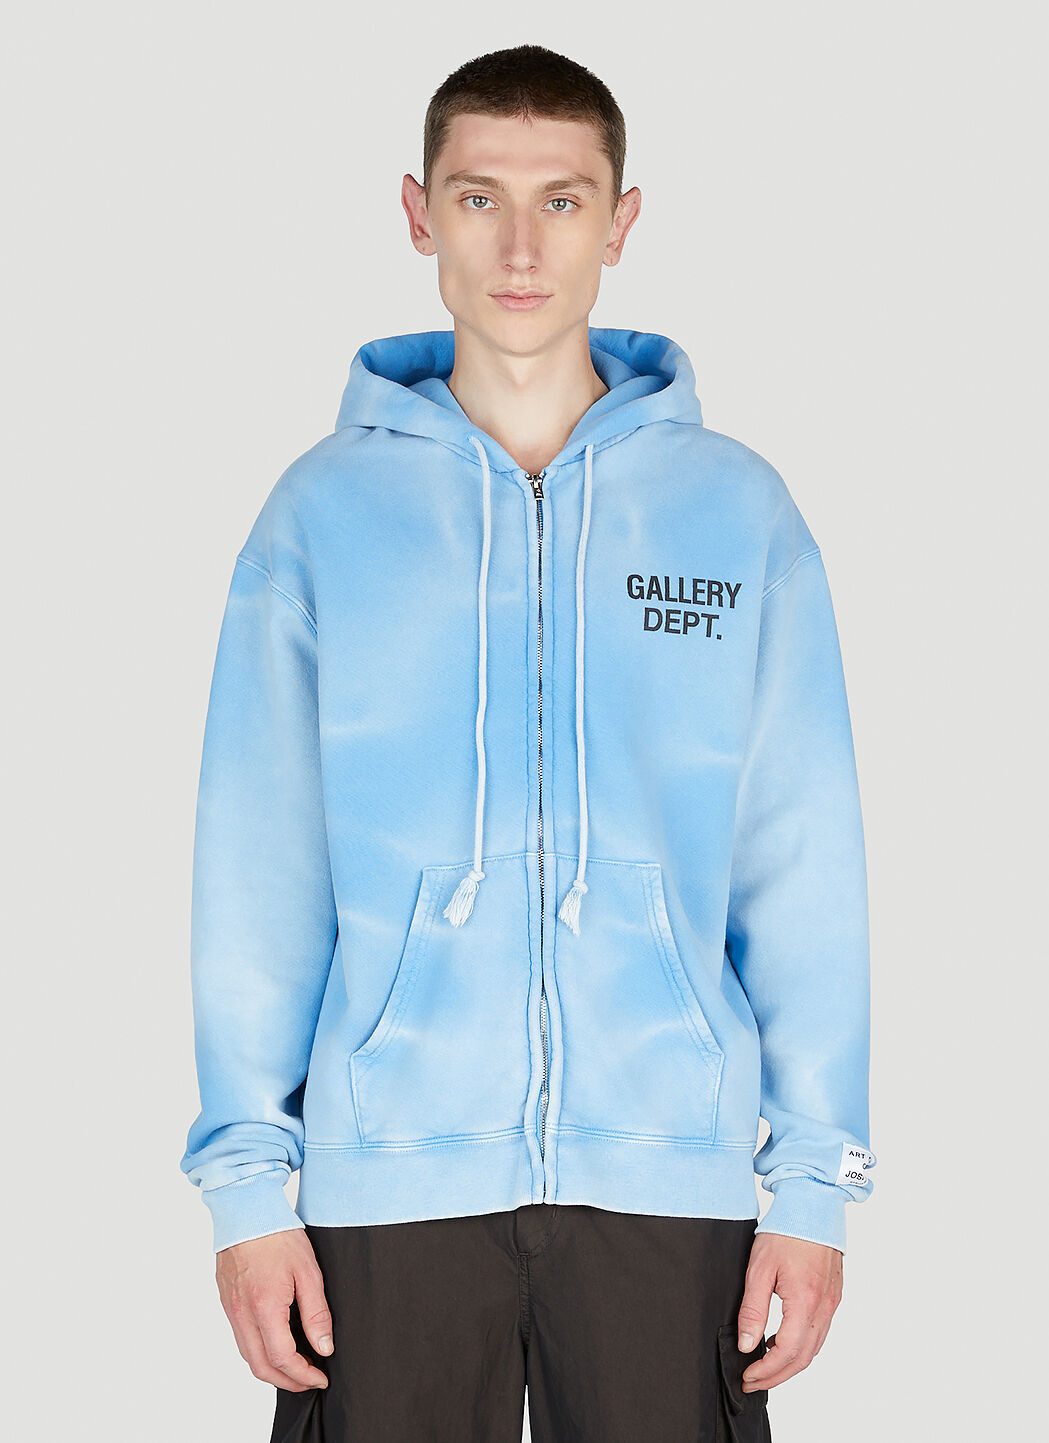 Gallery Dept. Tie-Dye Hooded Sweatshirt in Blue | LN-CC®